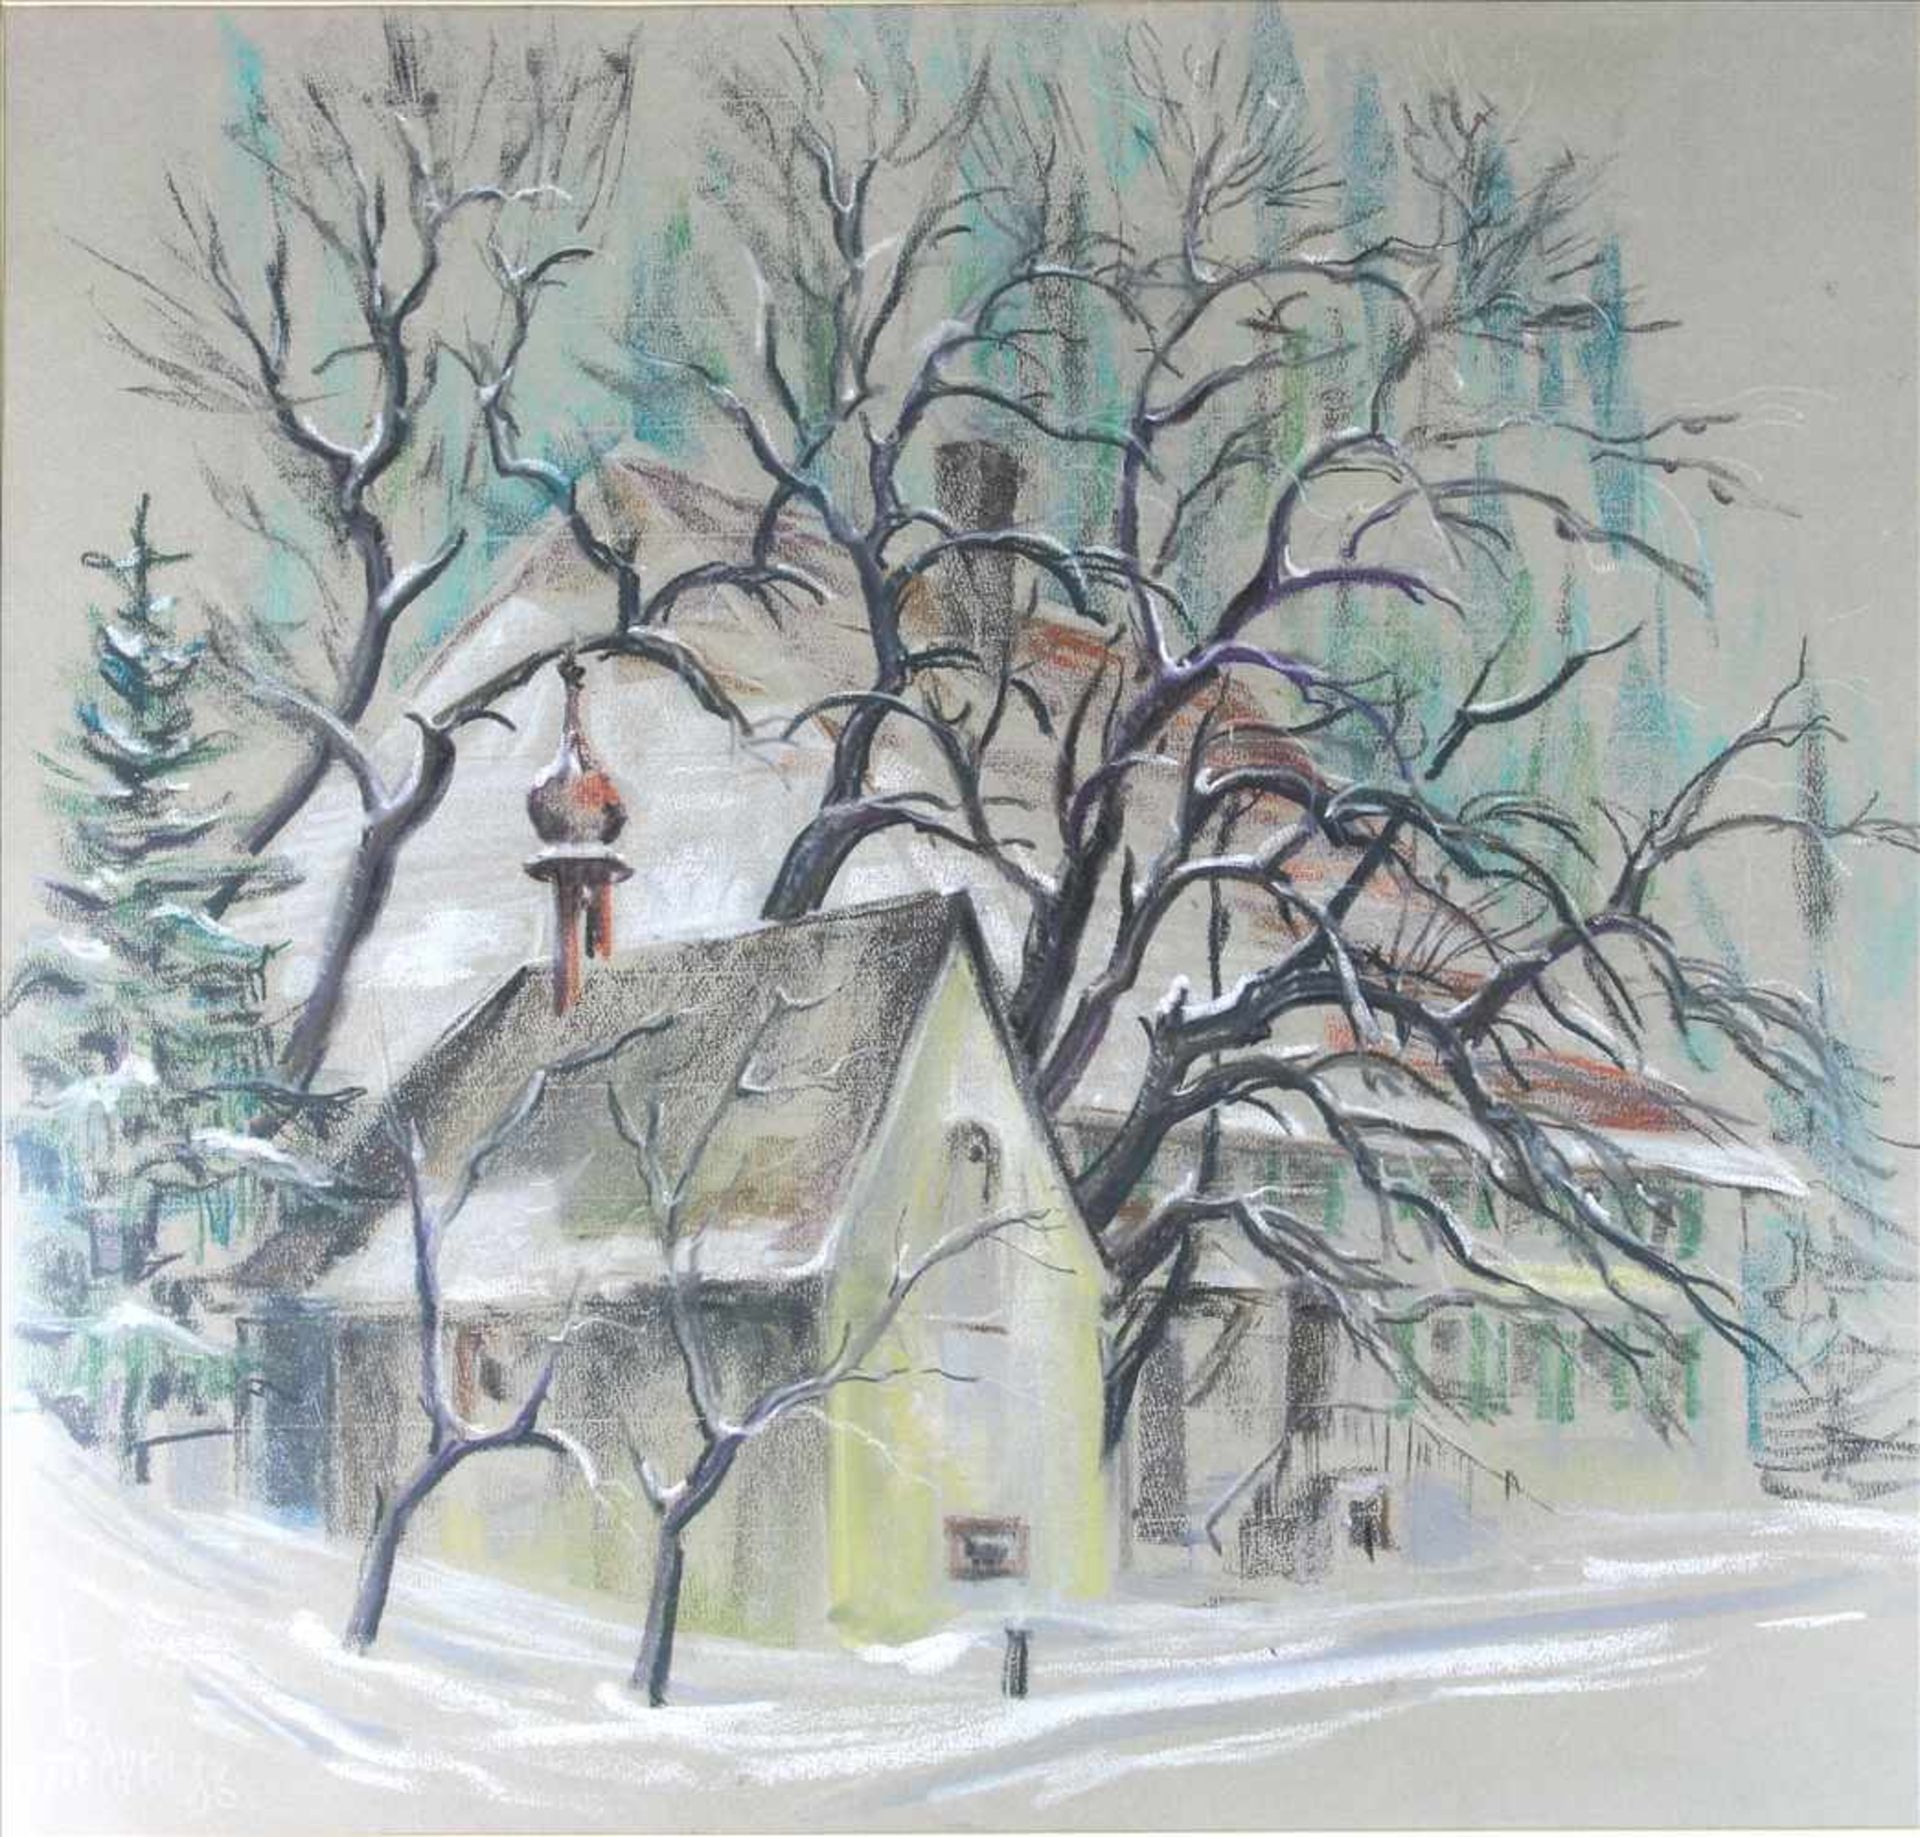 Schaufelberger, Karl*1920 St. Gallen. Kleine Kapelle vor großem Gutshaus im Schnee. Mischtechnik auf